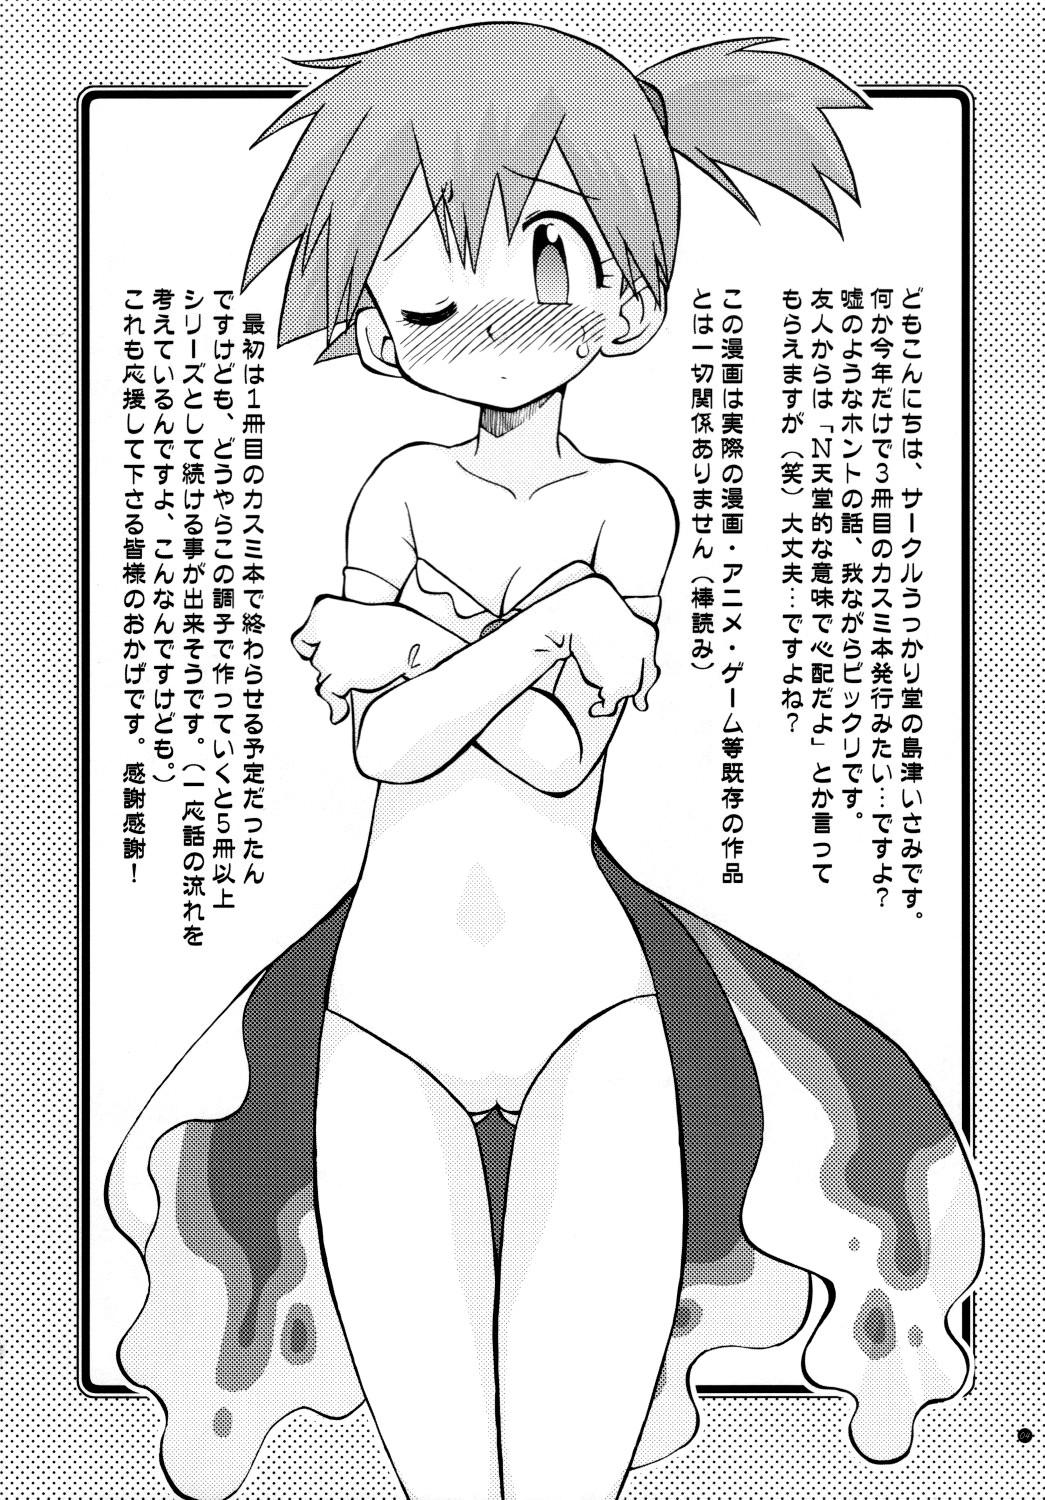 Foursome Mada Mada Dashiranai Koto no Takarabako - Pokemon Exposed - Page 4